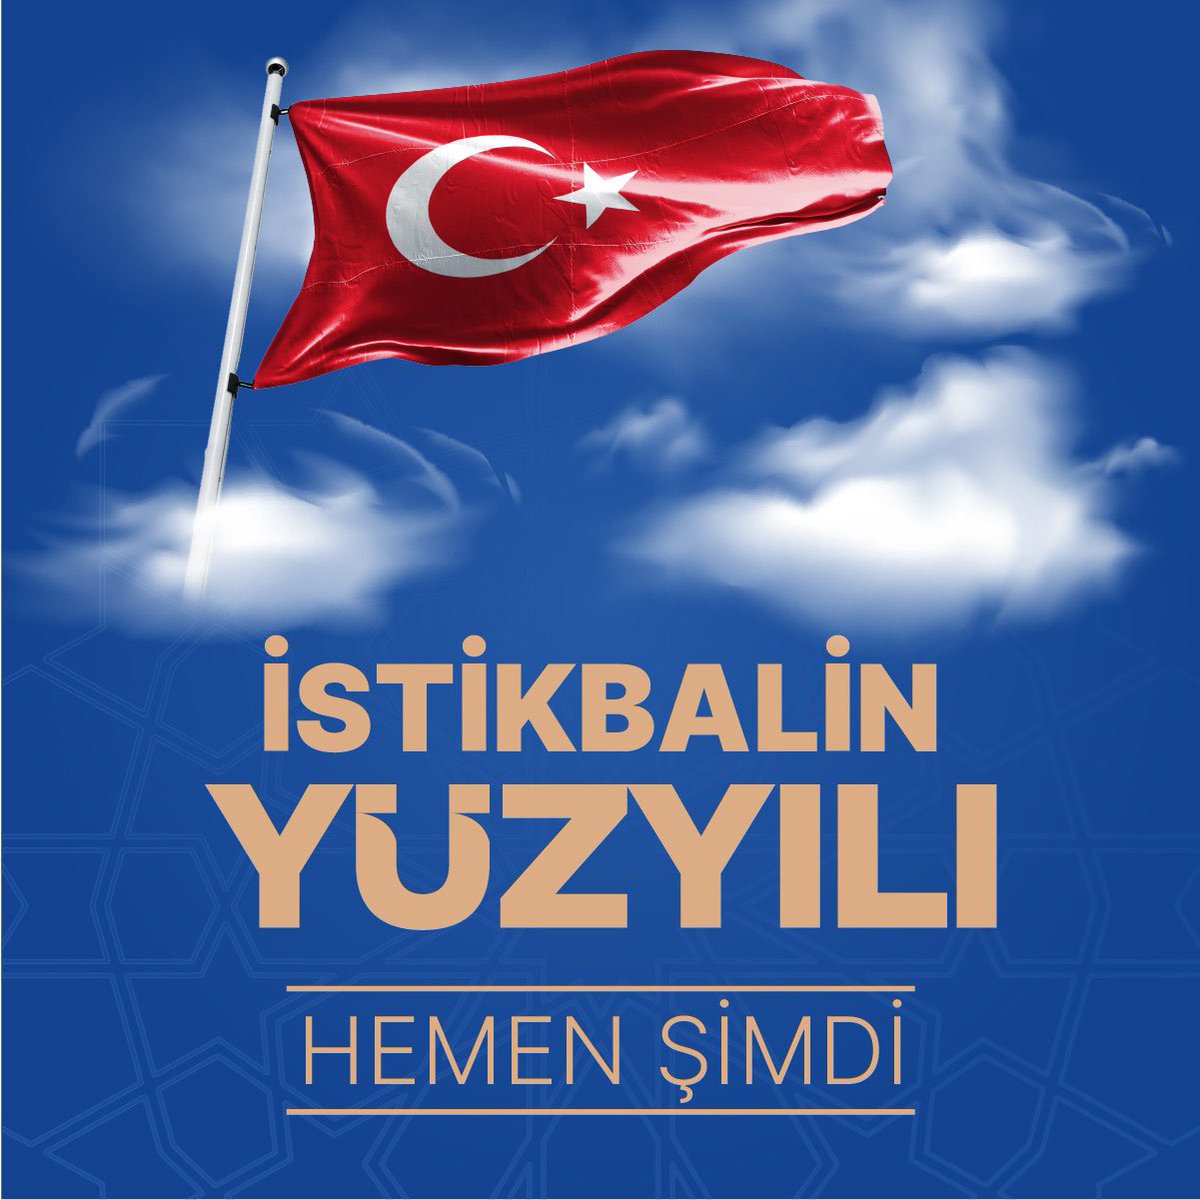 İstikbalin yüzyılı hemen şimdi… Türkiye Yüzyılı…